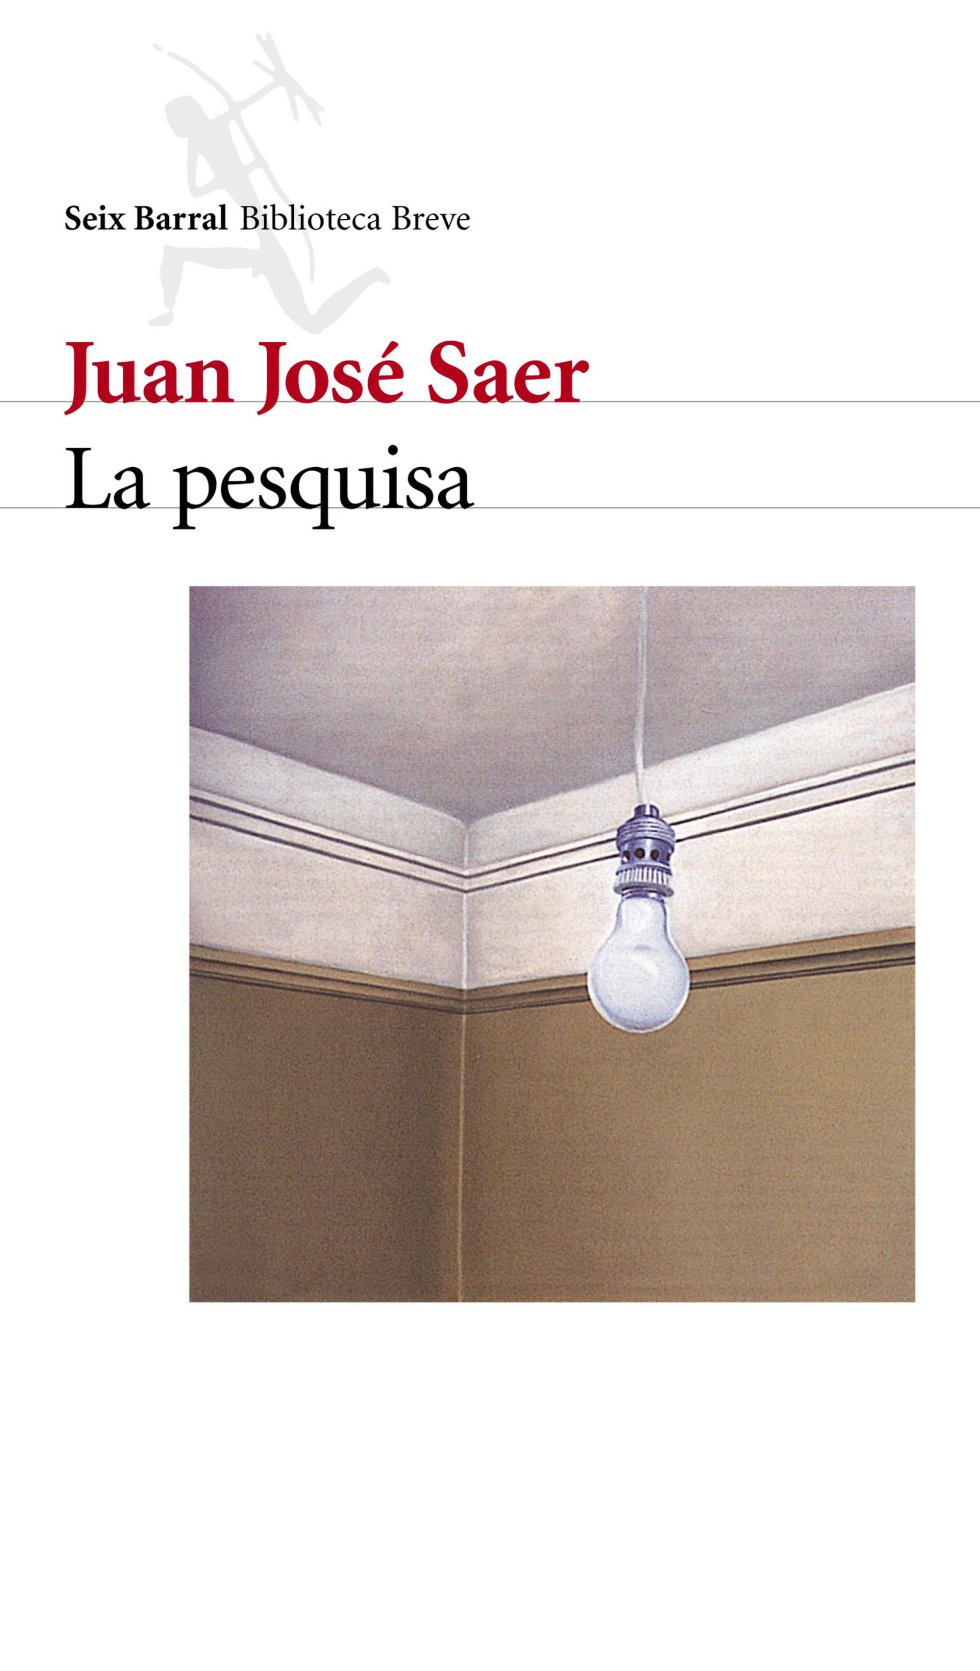 Estos son los mejores libros en español de los últimos 25 años, según diario El País